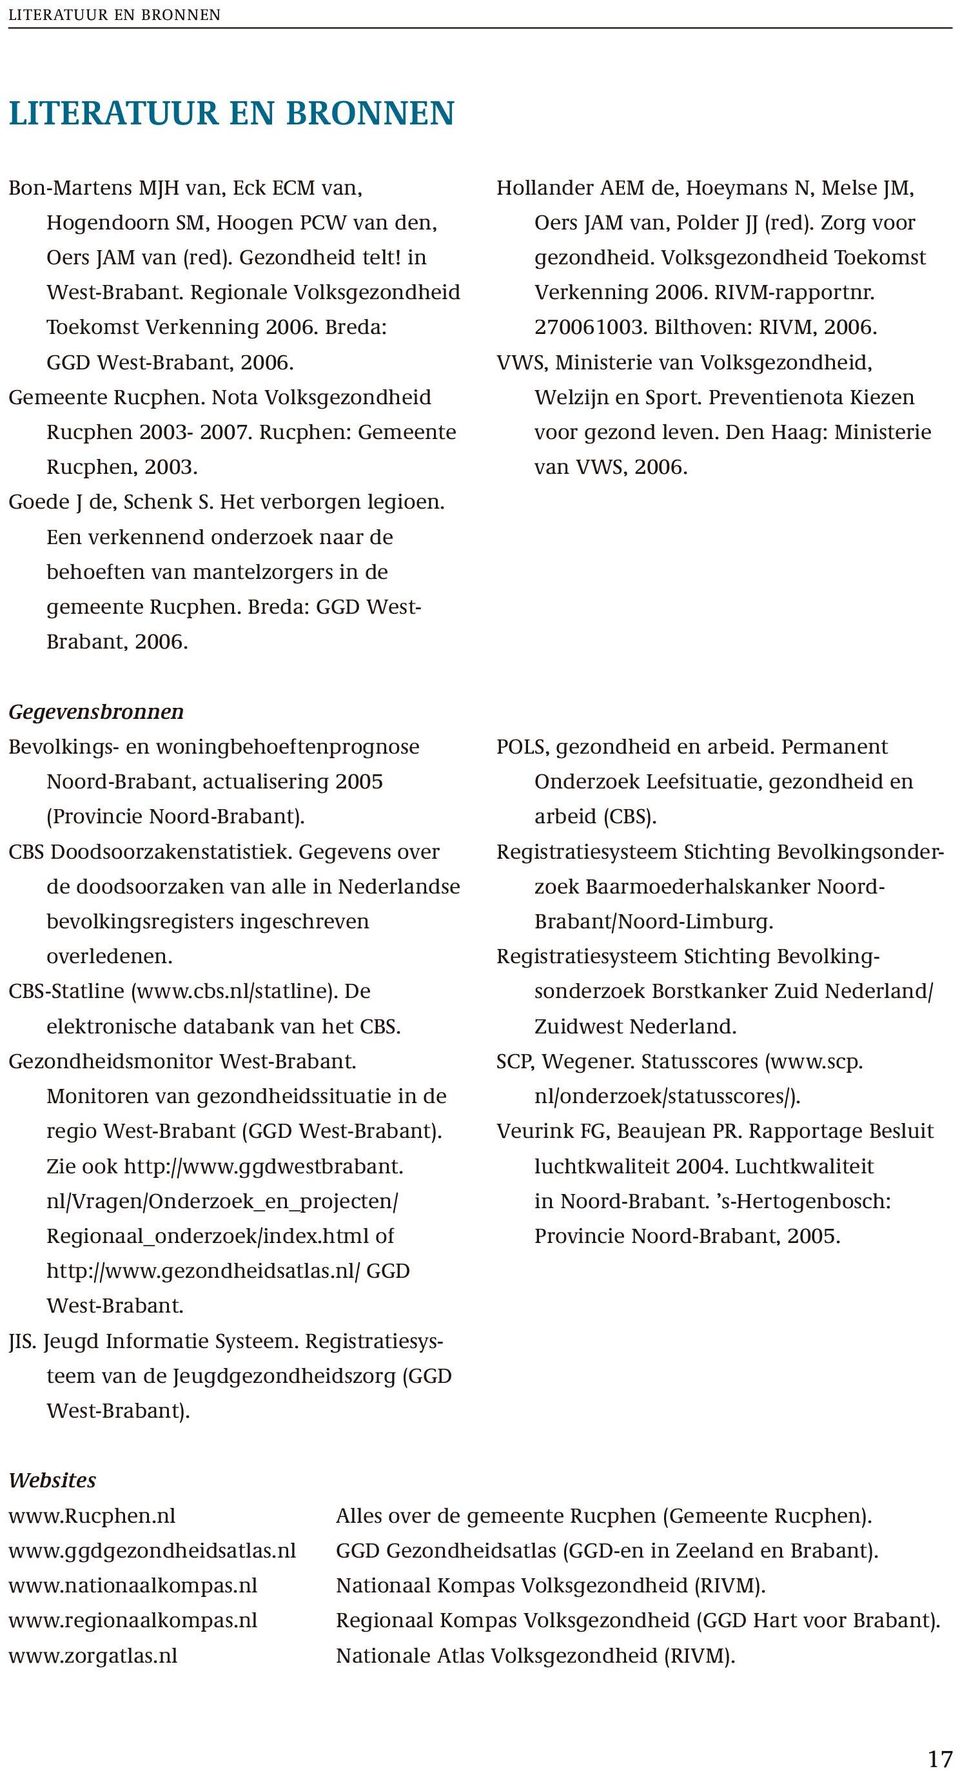 Het verborgen legioen. Een verkennend onderzoek naar de behoeften van mantelzorgers in de gemeente Rucphen. Breda: GGD West- Brabant, 2006.